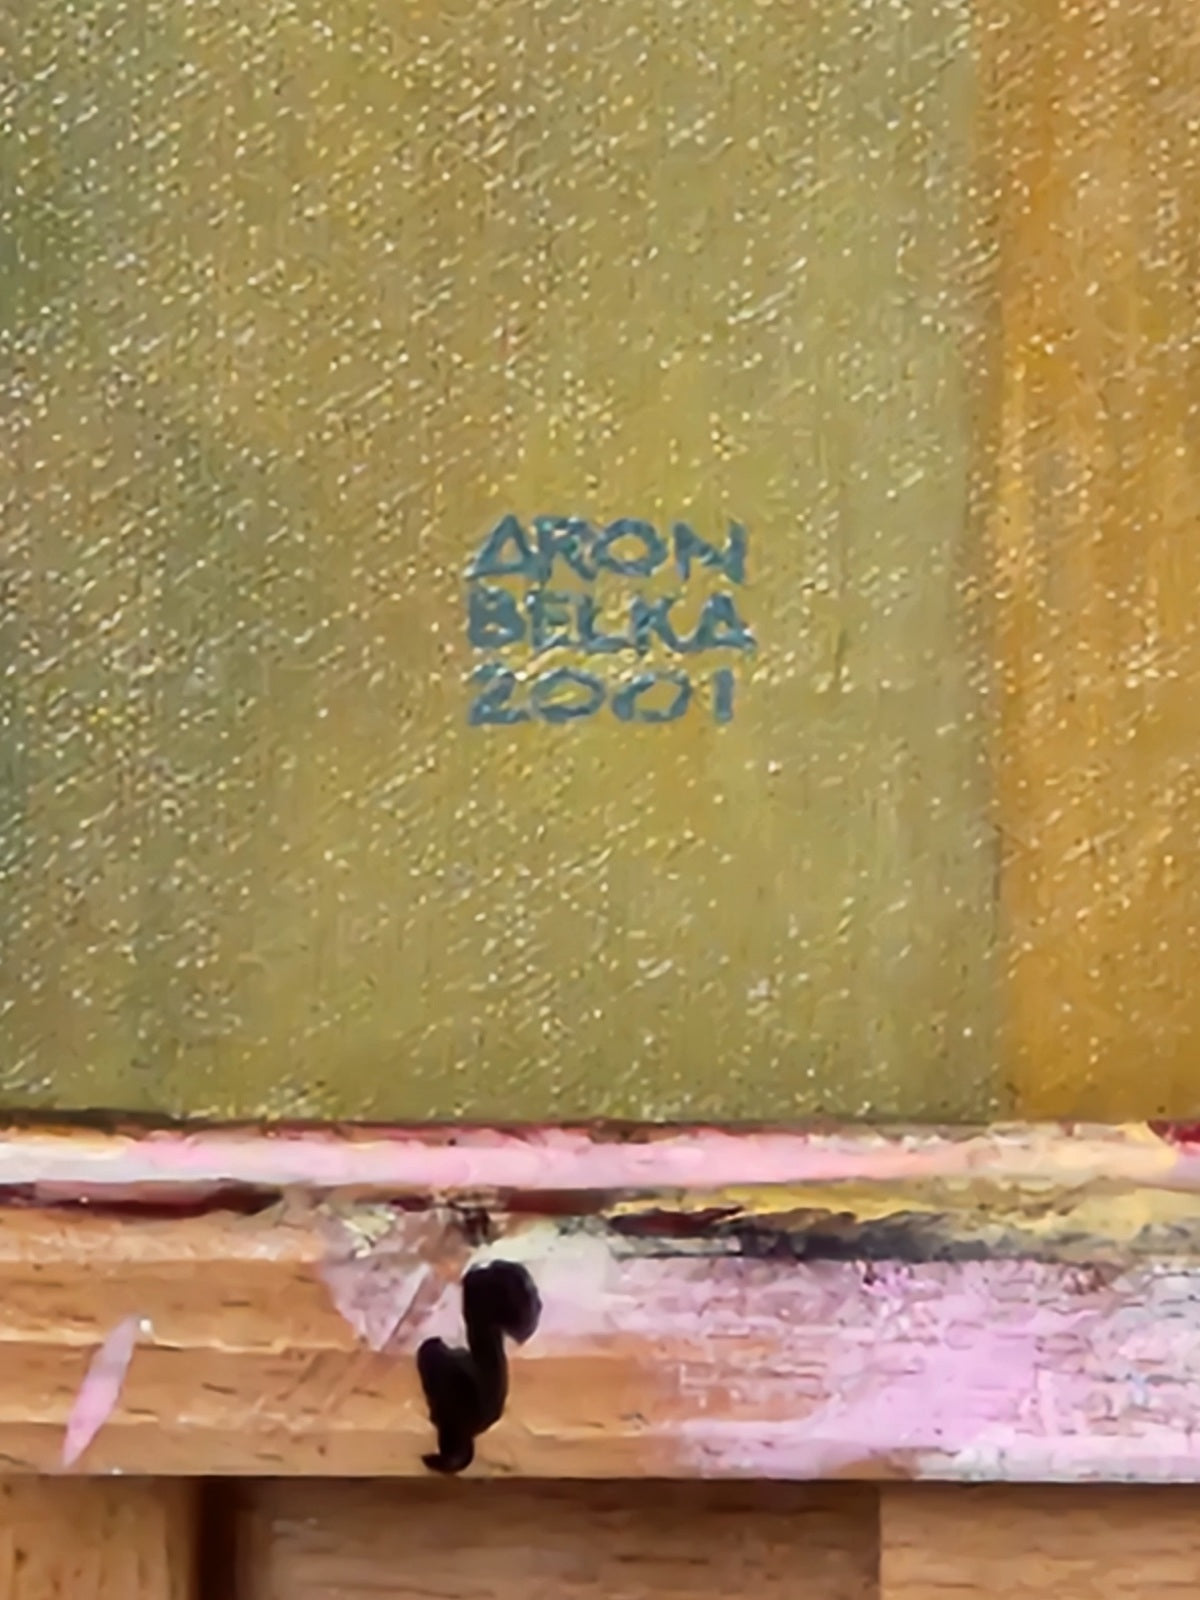 Aron Belka Original 2001